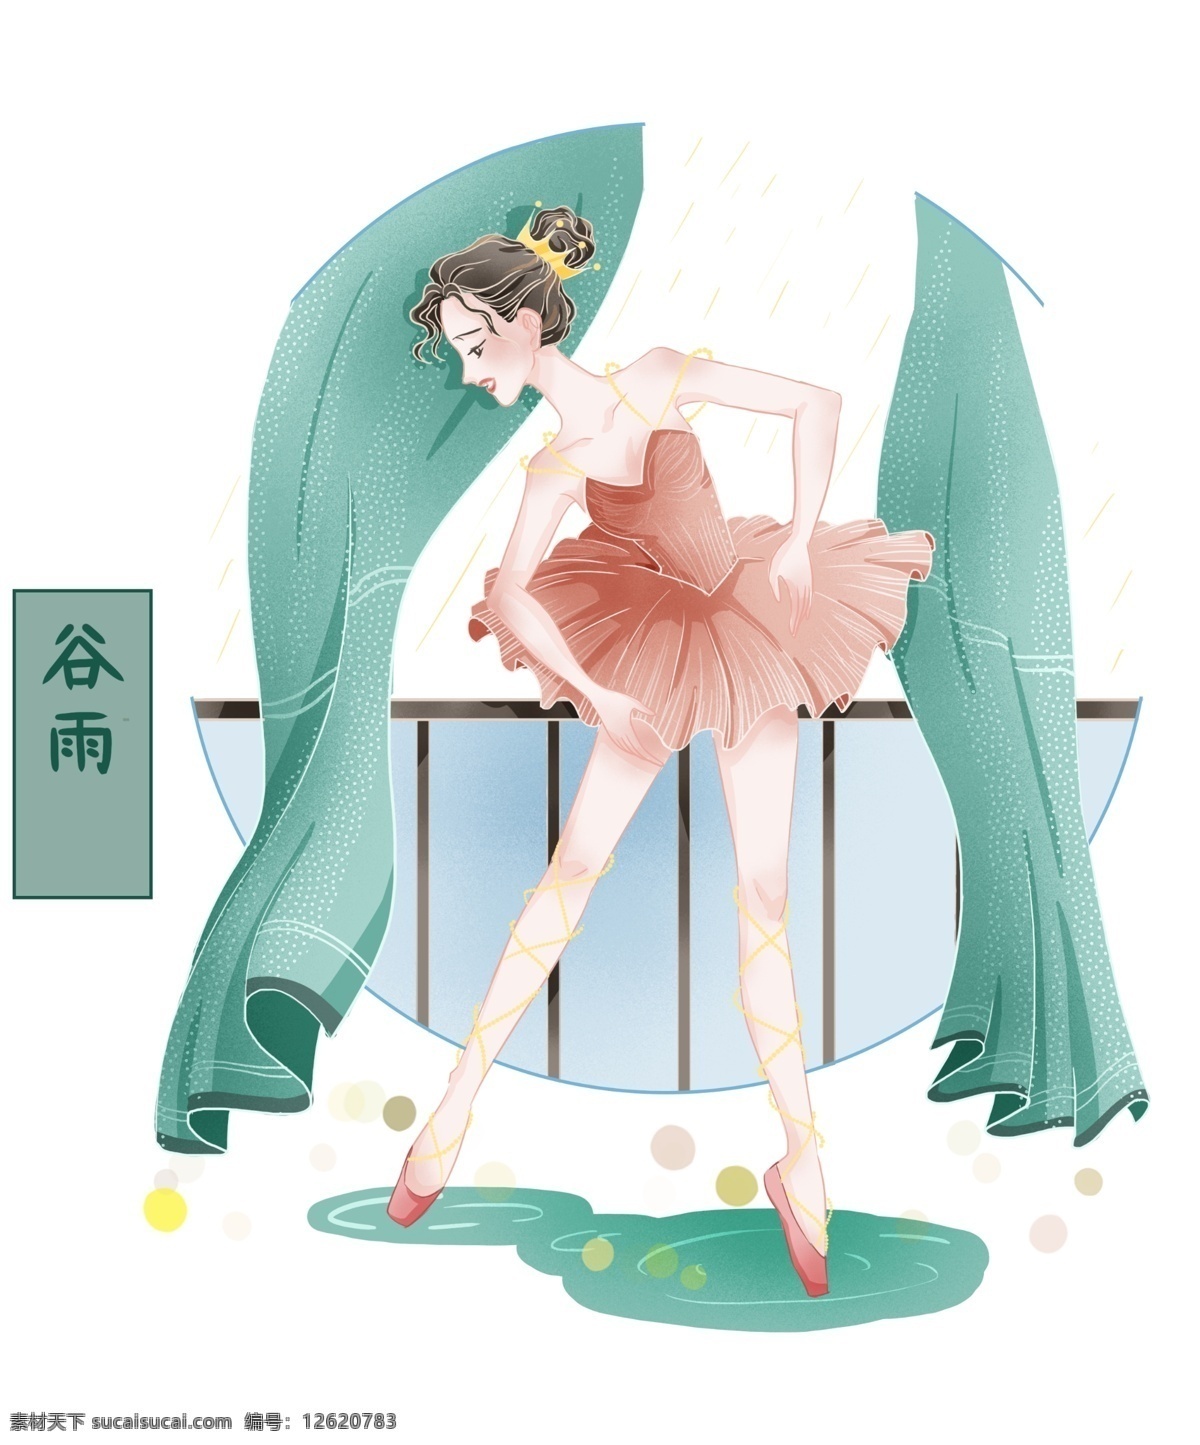 谷雨 节气 跳舞 插画 跳舞的女孩 卡通插画 谷雨插画 节气插画 二十四节气 下雨的节气 舞蹈的女孩